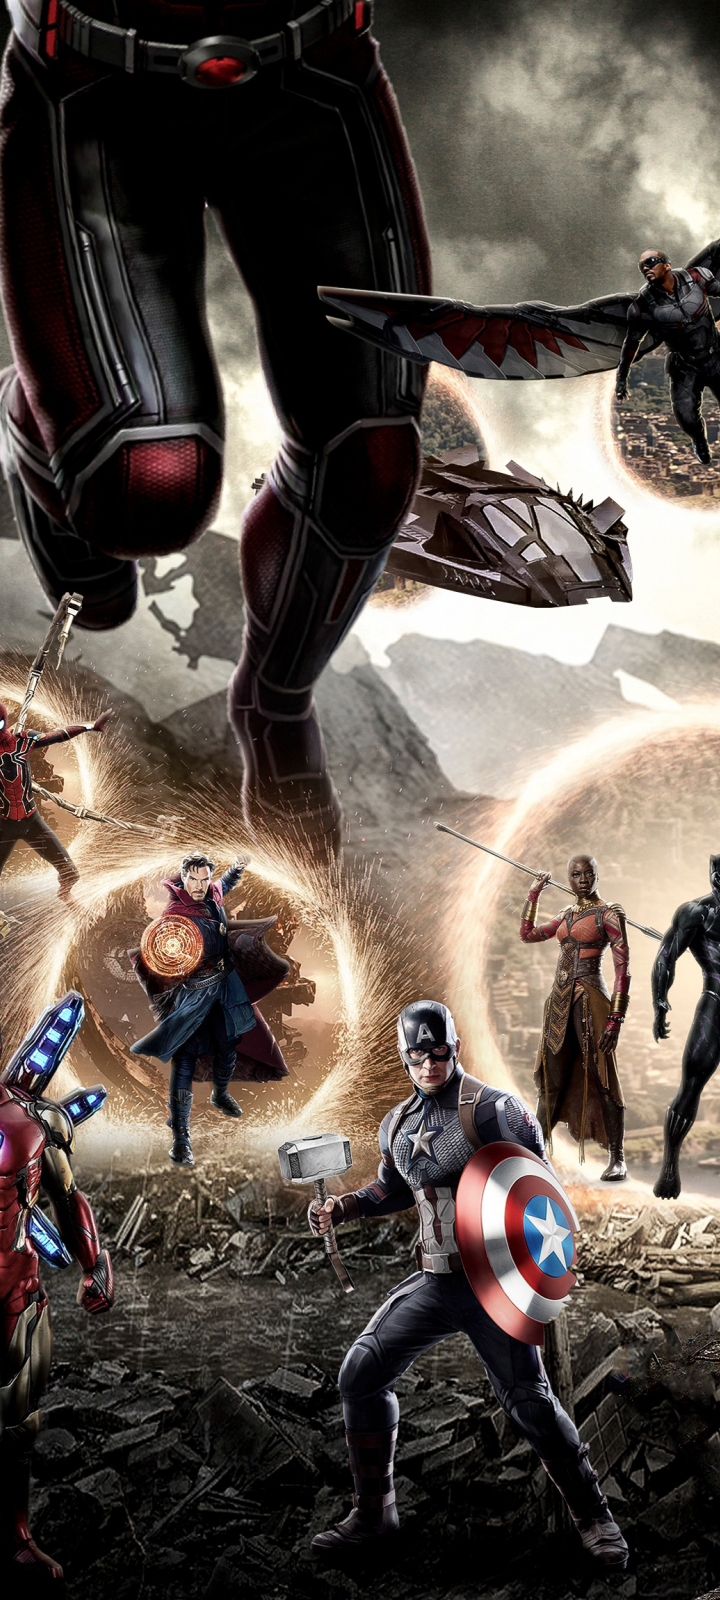 avengers endgame final battle full movie download